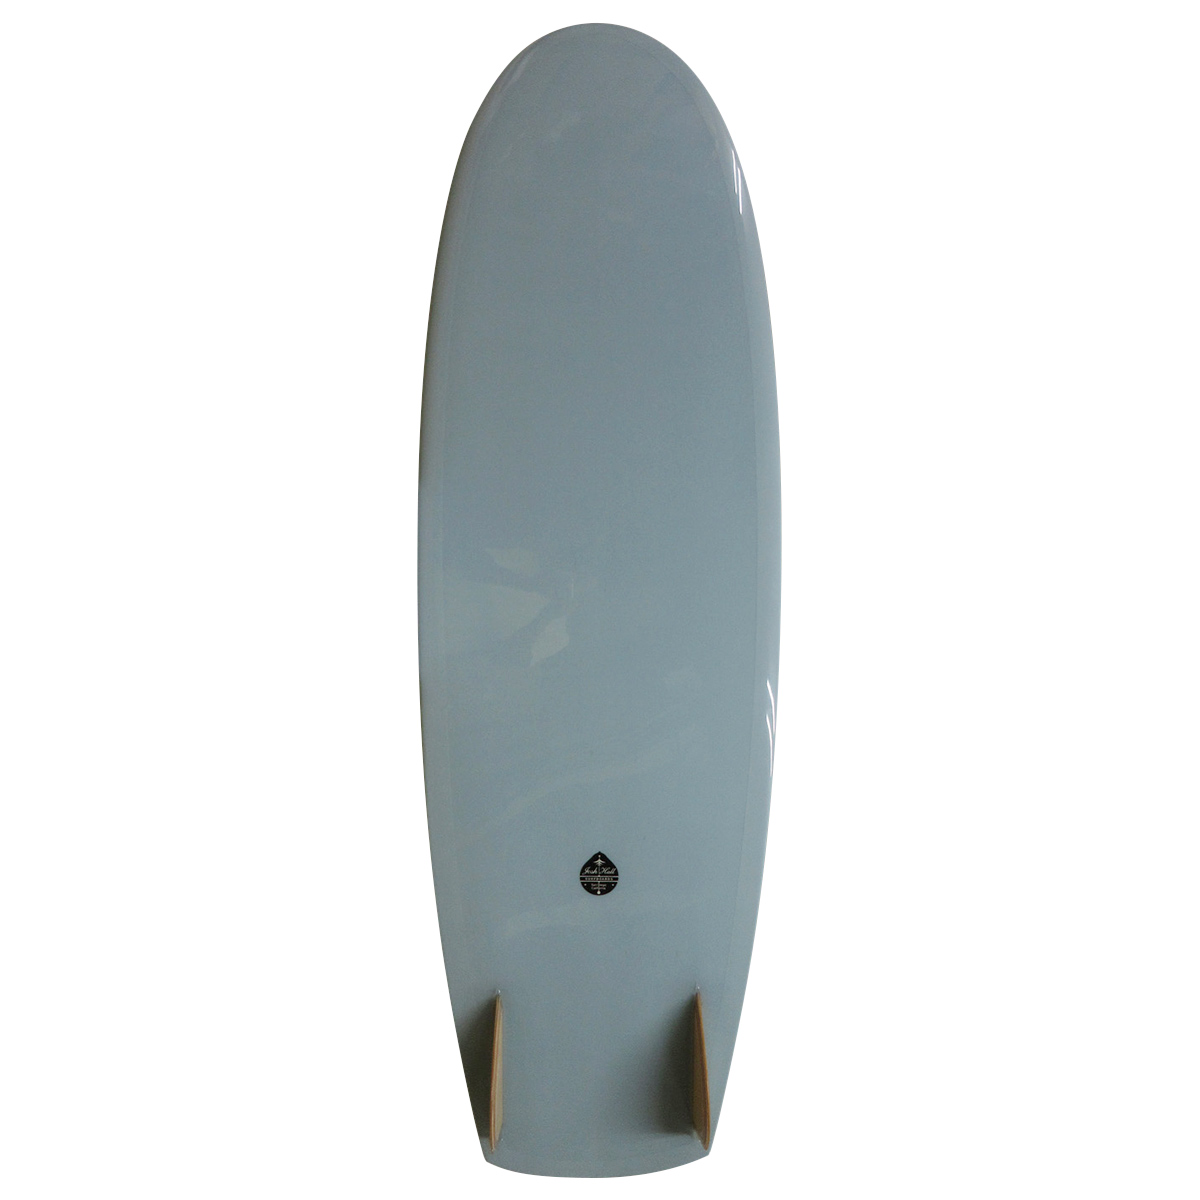 Josh Hall Surfboards / PESCADO HINCHADO VELO 6'0